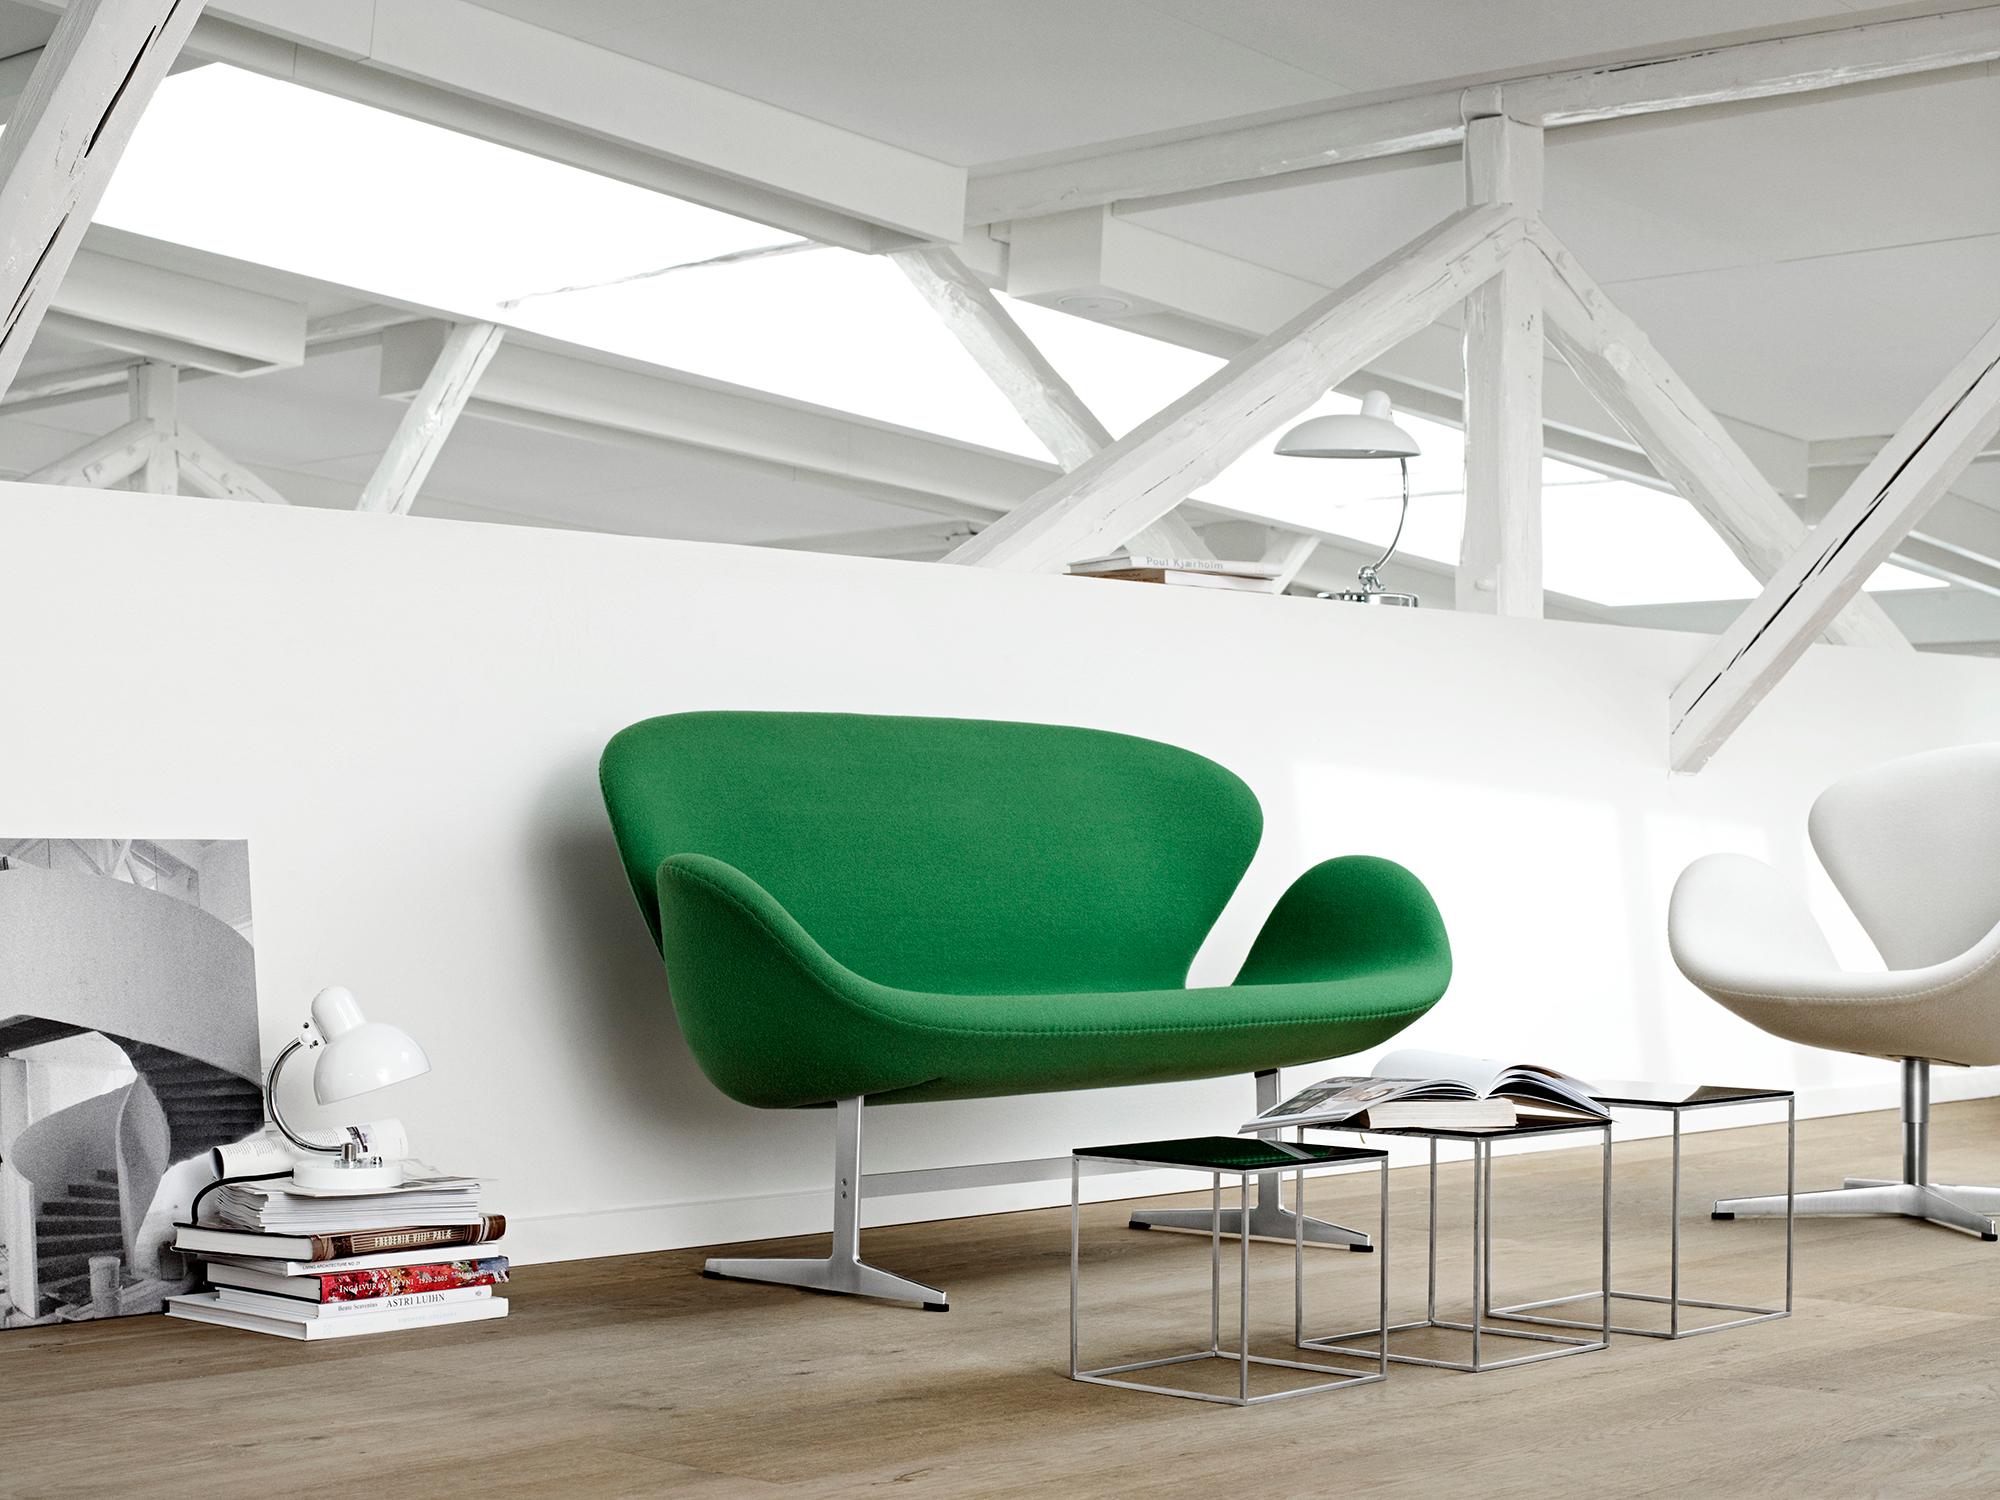 Canapé 'Swan' de Arne Jacobsen pour Fritz Hansen en tissu d'ameublement (Cat. 1).

Fondée en 1872, la société Fritz Hansen est devenue synonyme de design danois légendaire. Alliant un savoir-faire intemporel à un souci de durabilité, les rééditions